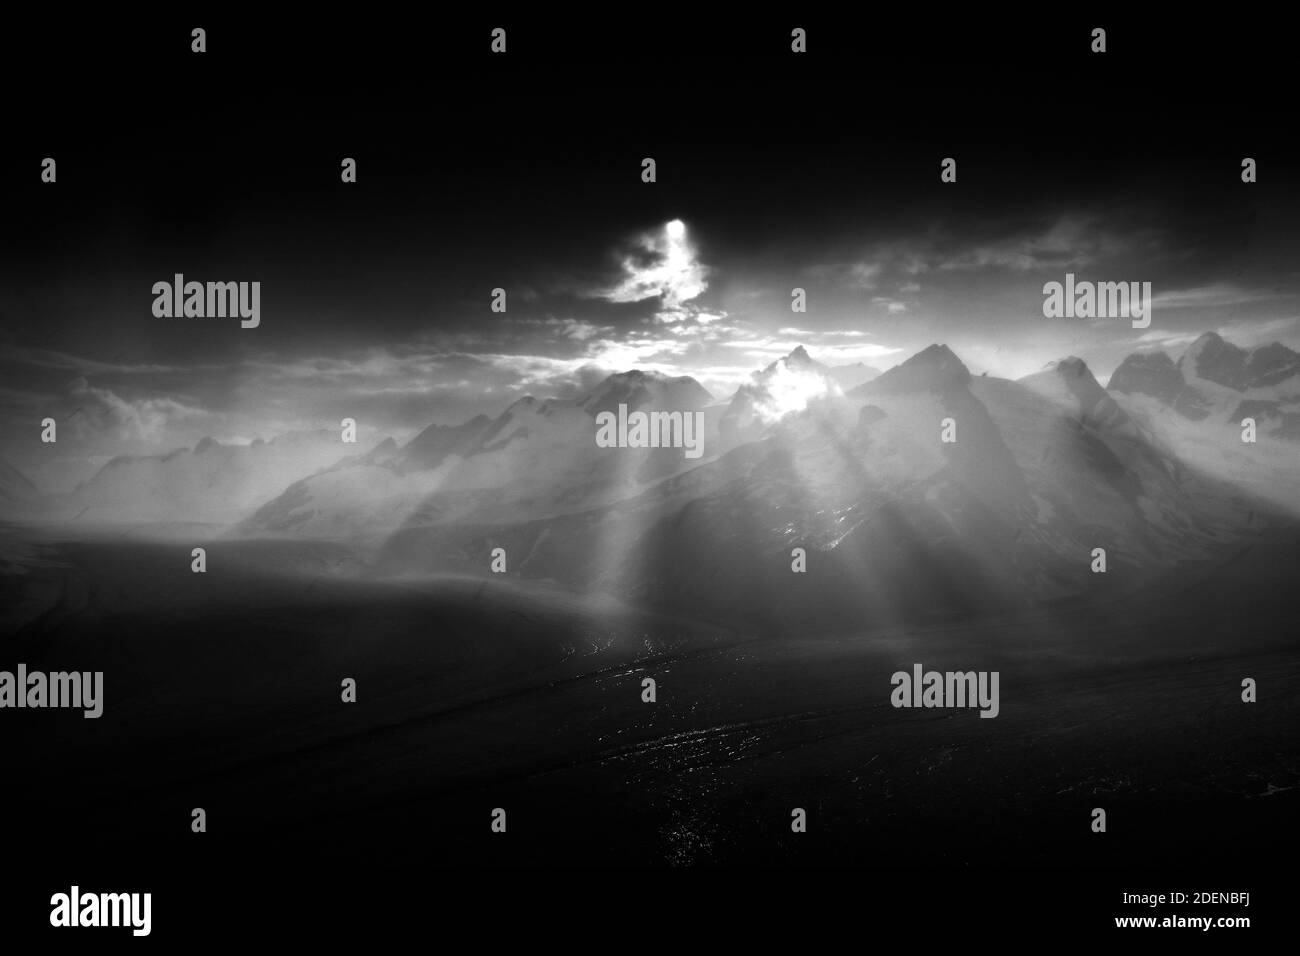 Konkordiahütte von der   auf den Aletschgletscher Foto Stock